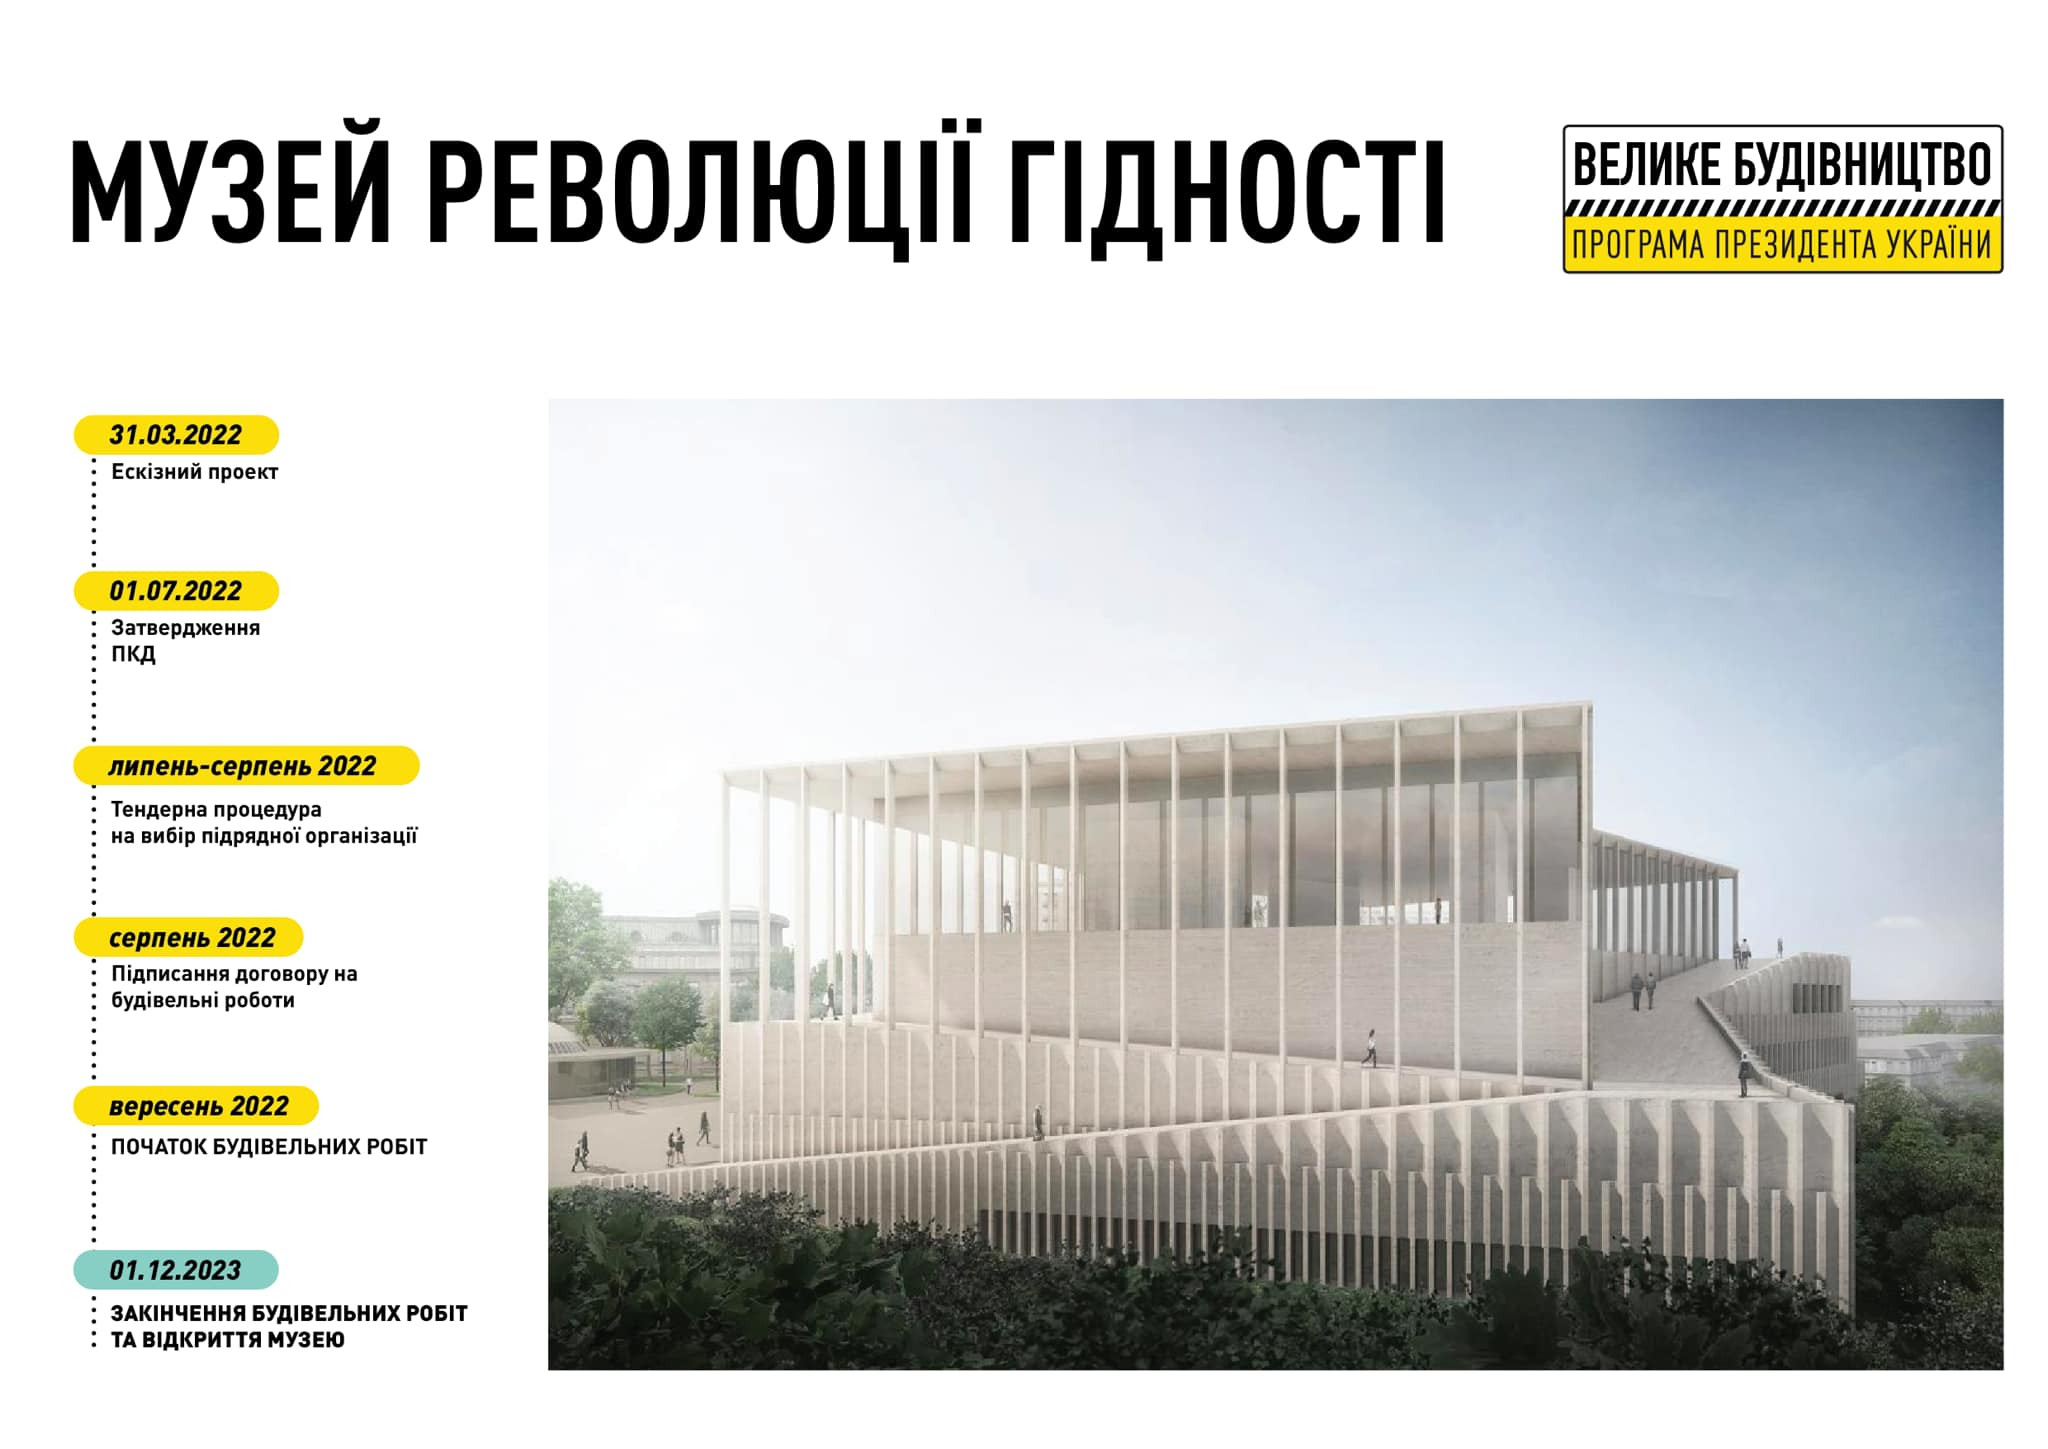 В 2023-му в Києві збудують музей Революції гідності - зображення